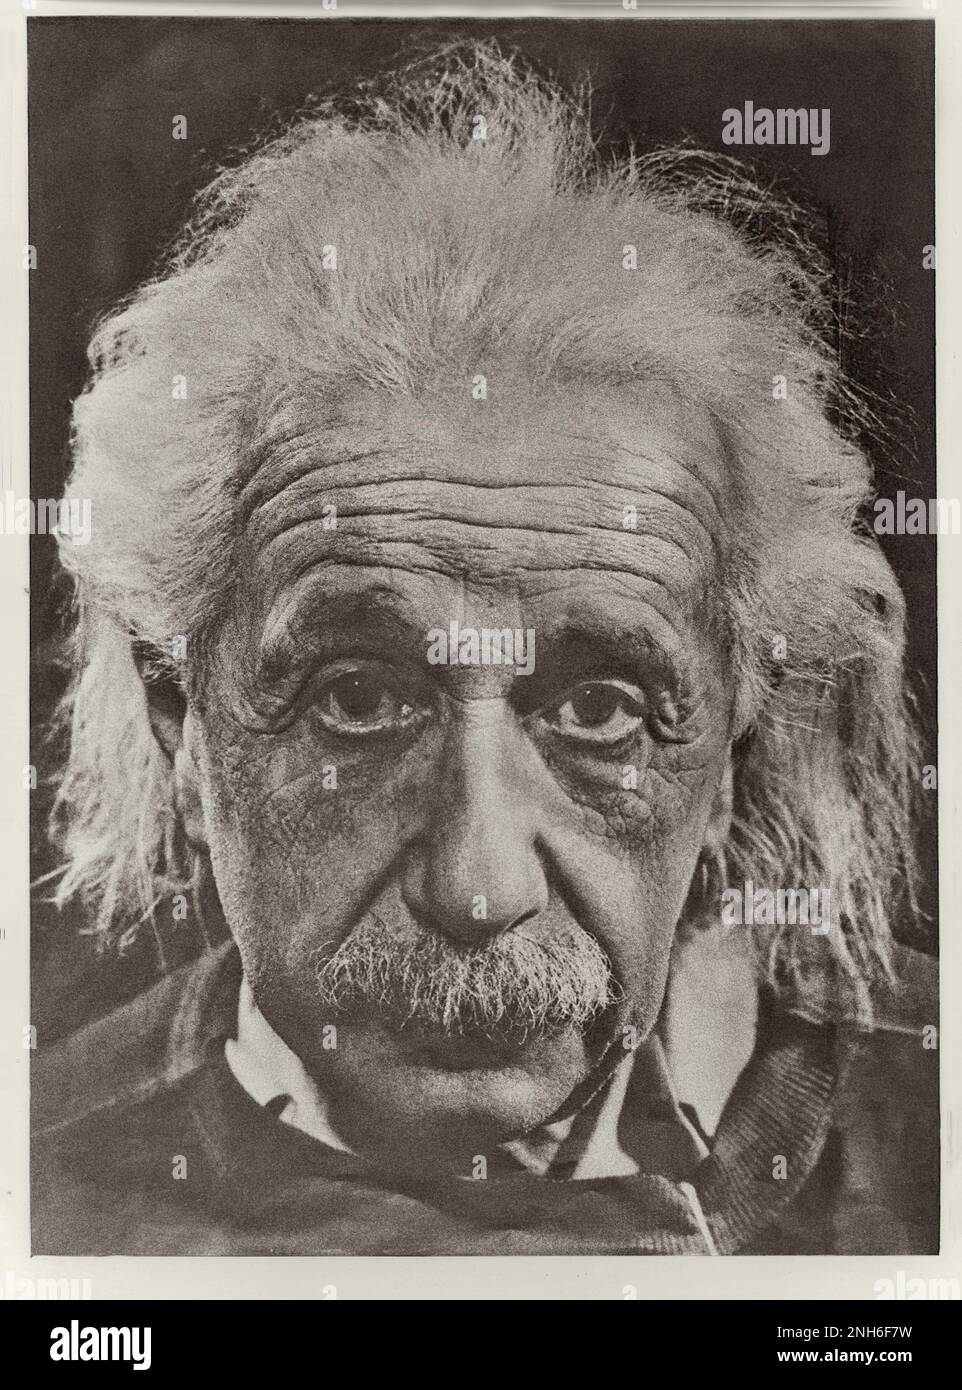 Ritratto di Albert Einstein. Albert Einstein (1879 – 1955) è stato un fisico teorico tedesco che ha sviluppato la teoria della relatività, uno dei due pilastri della fisica moderna (insieme alla meccanica quantistica). Il suo lavoro è noto anche per la sua influenza sulla filosofia della scienza. È meglio conosciuto al pubblico per la sua formula di equivalenza massa-energia e = mc2, che è stata definita "l'equazione più famosa del mondo". Ha ricevuto il Premio Nobel 1921 in fisica 'per i suoi servizi alla fisica teorica, e in particolare per la sua scoperta della legge dell'effetto fotoelettrico', un perno di st Foto Stock